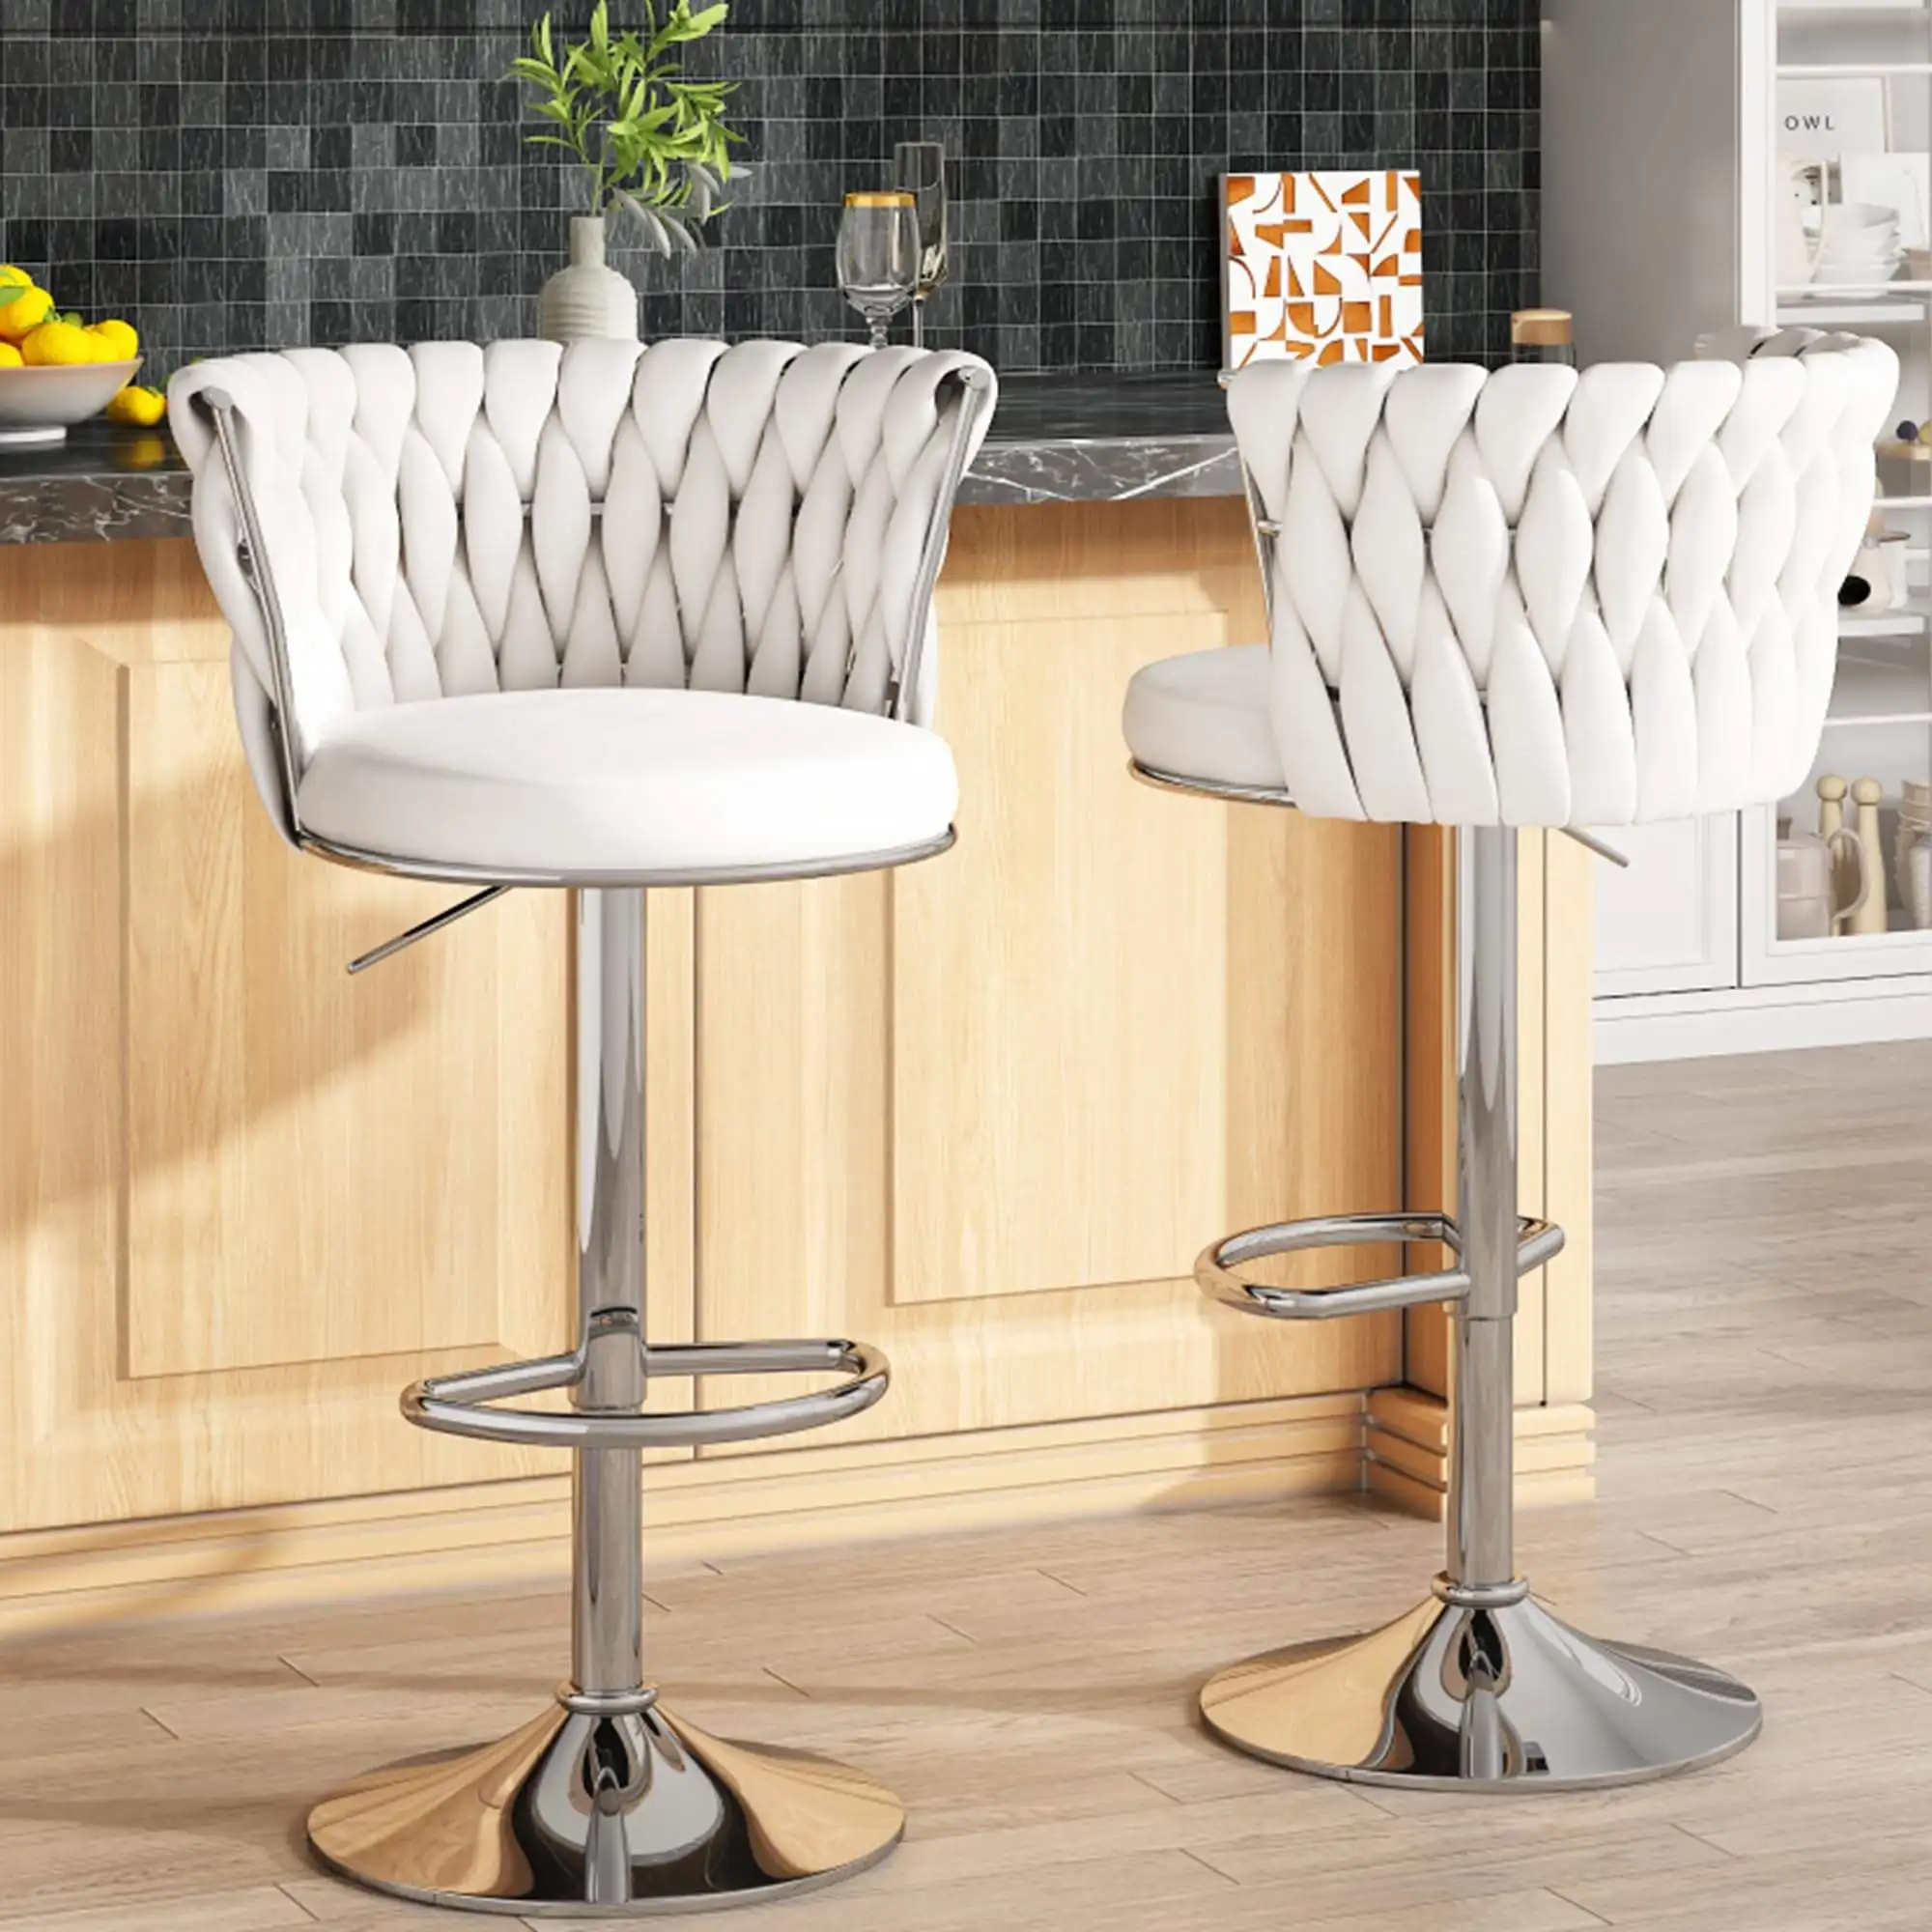 El último par de 2 Taburetes de Bar de terciopelo blanco: Taburetes de Bar giratorios de altura ajustable con elegantes sillas de bar tapizadas